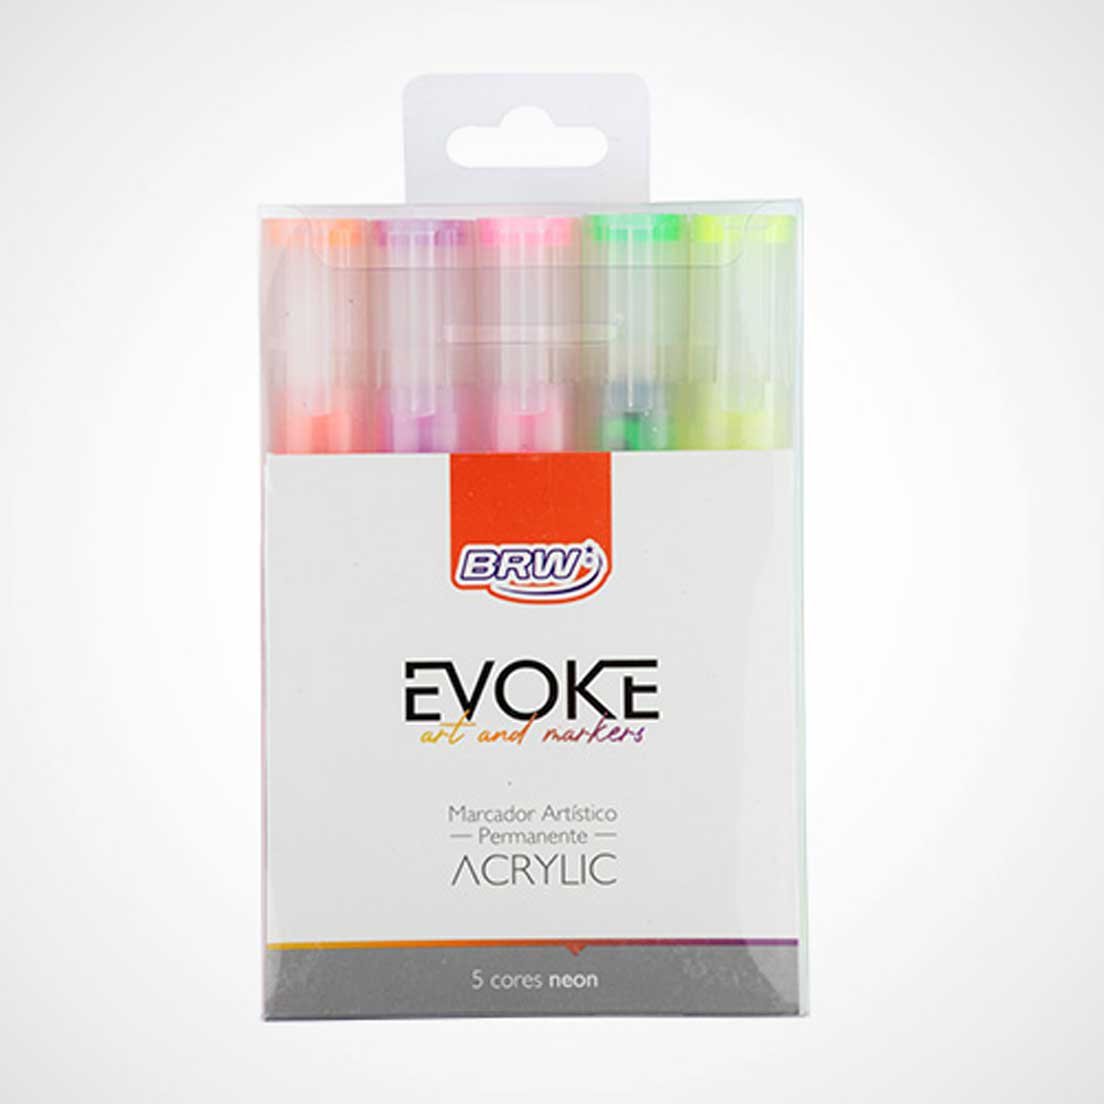 Marcador Artístico Permanente Acrylic 5 Cores Neon Brw Evoke - 1